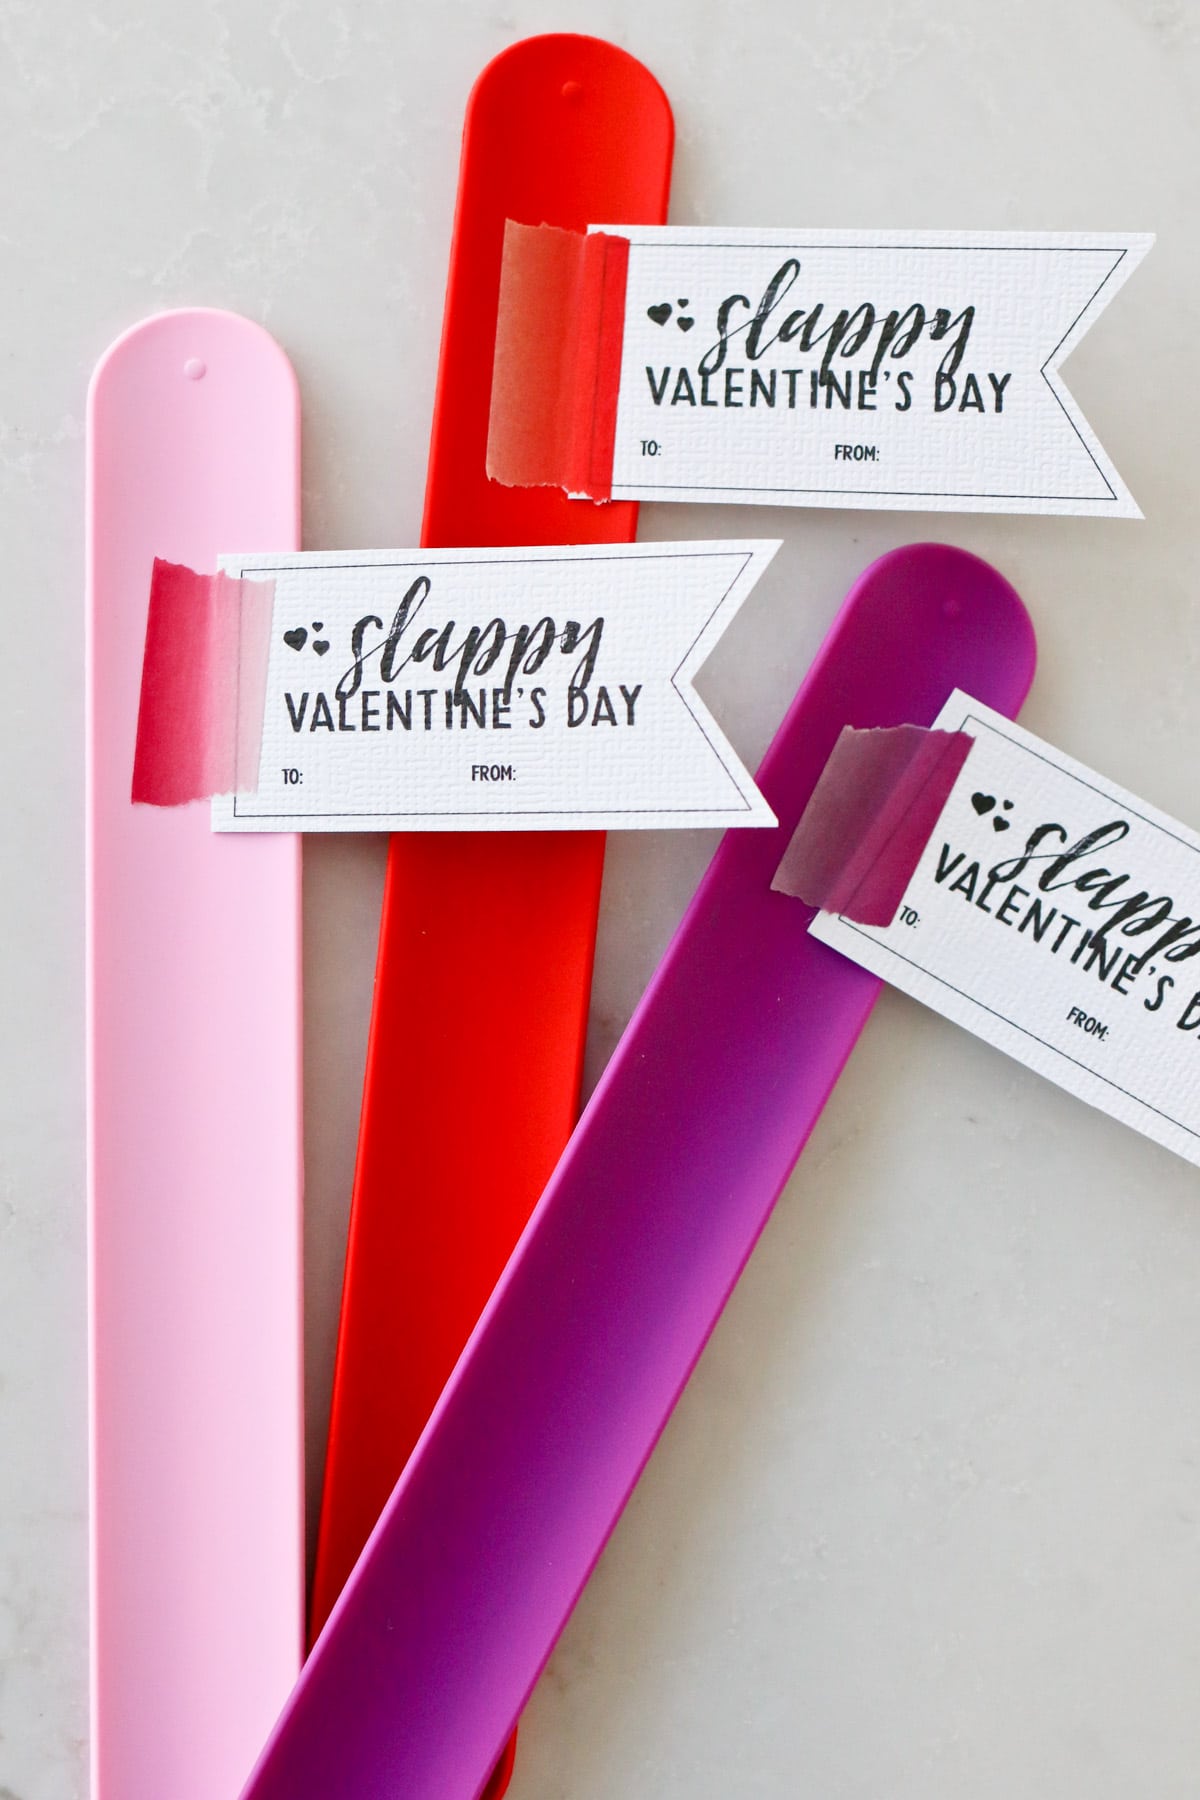 "Slappy" Valentines Day Free Printable Tidbits